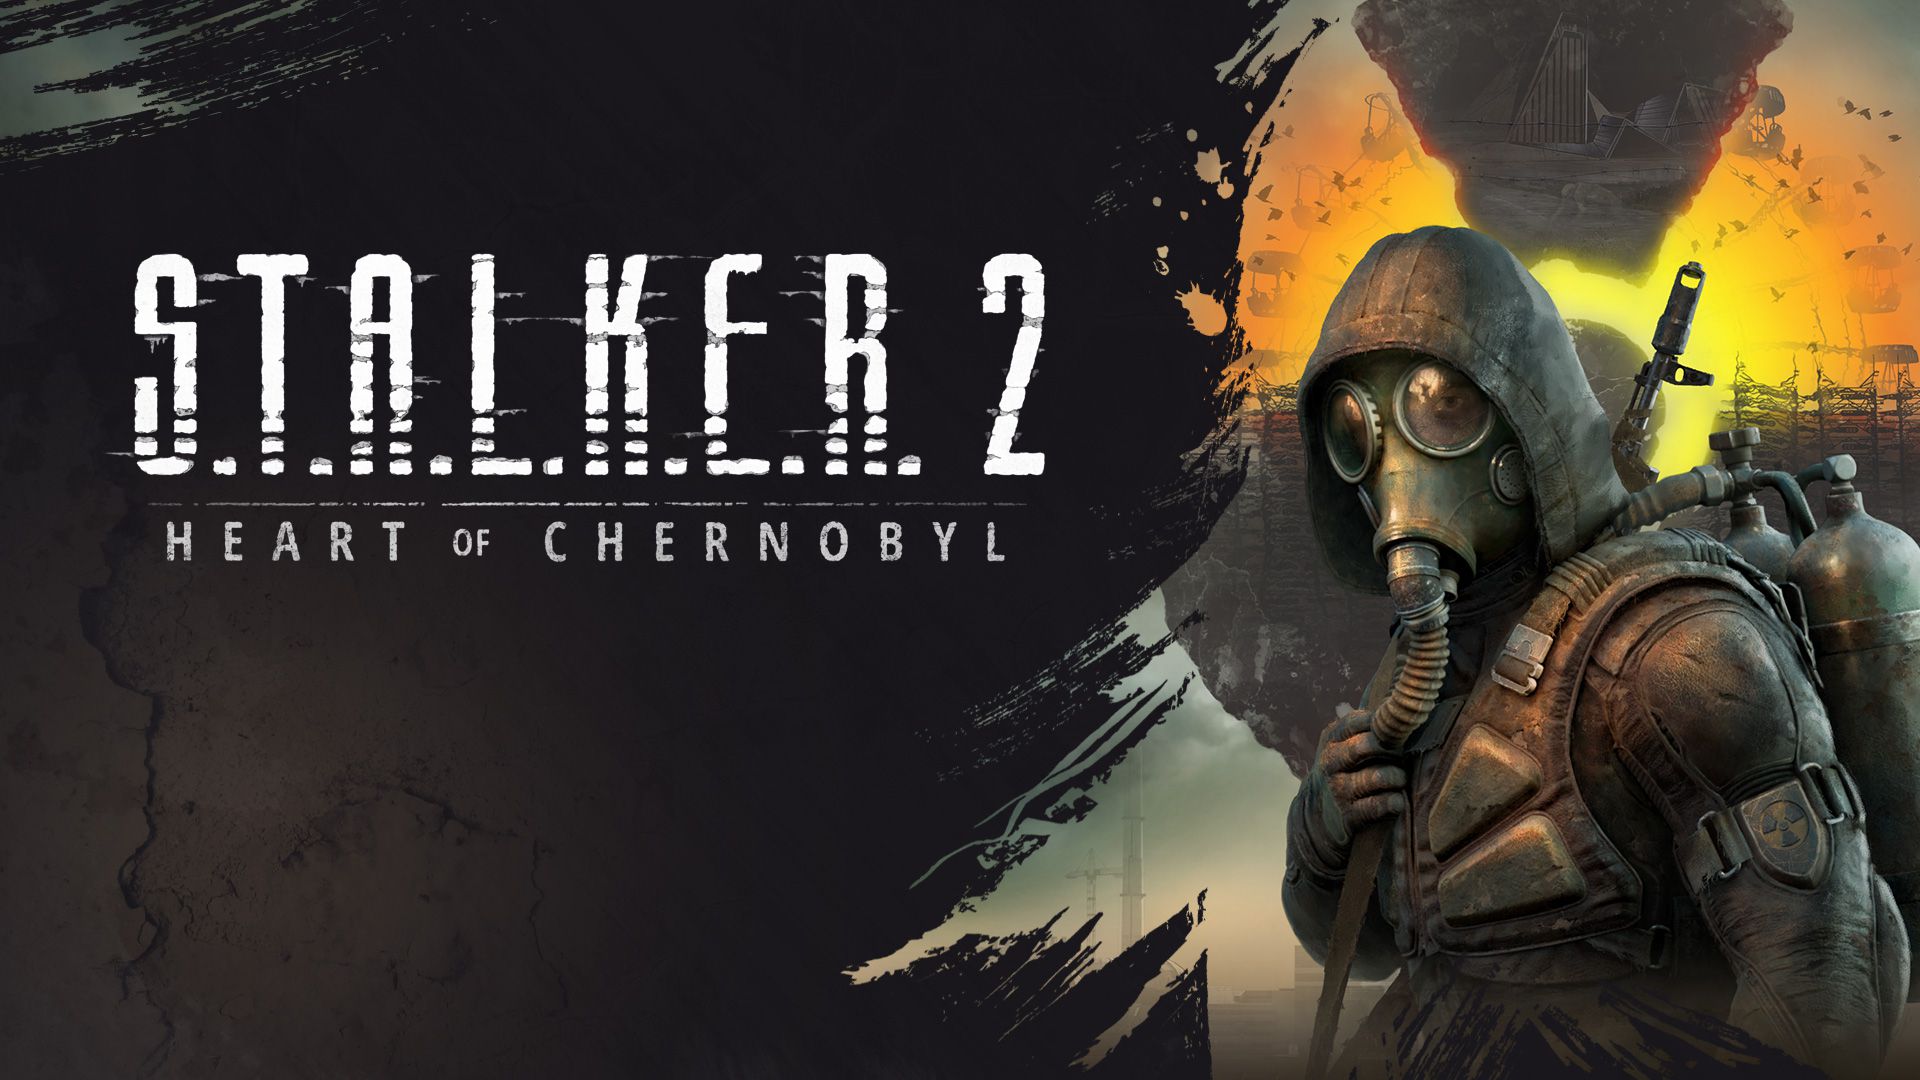 download the new for apple S.T.A.L.K.E.R. 2: Heart of Chernobyl